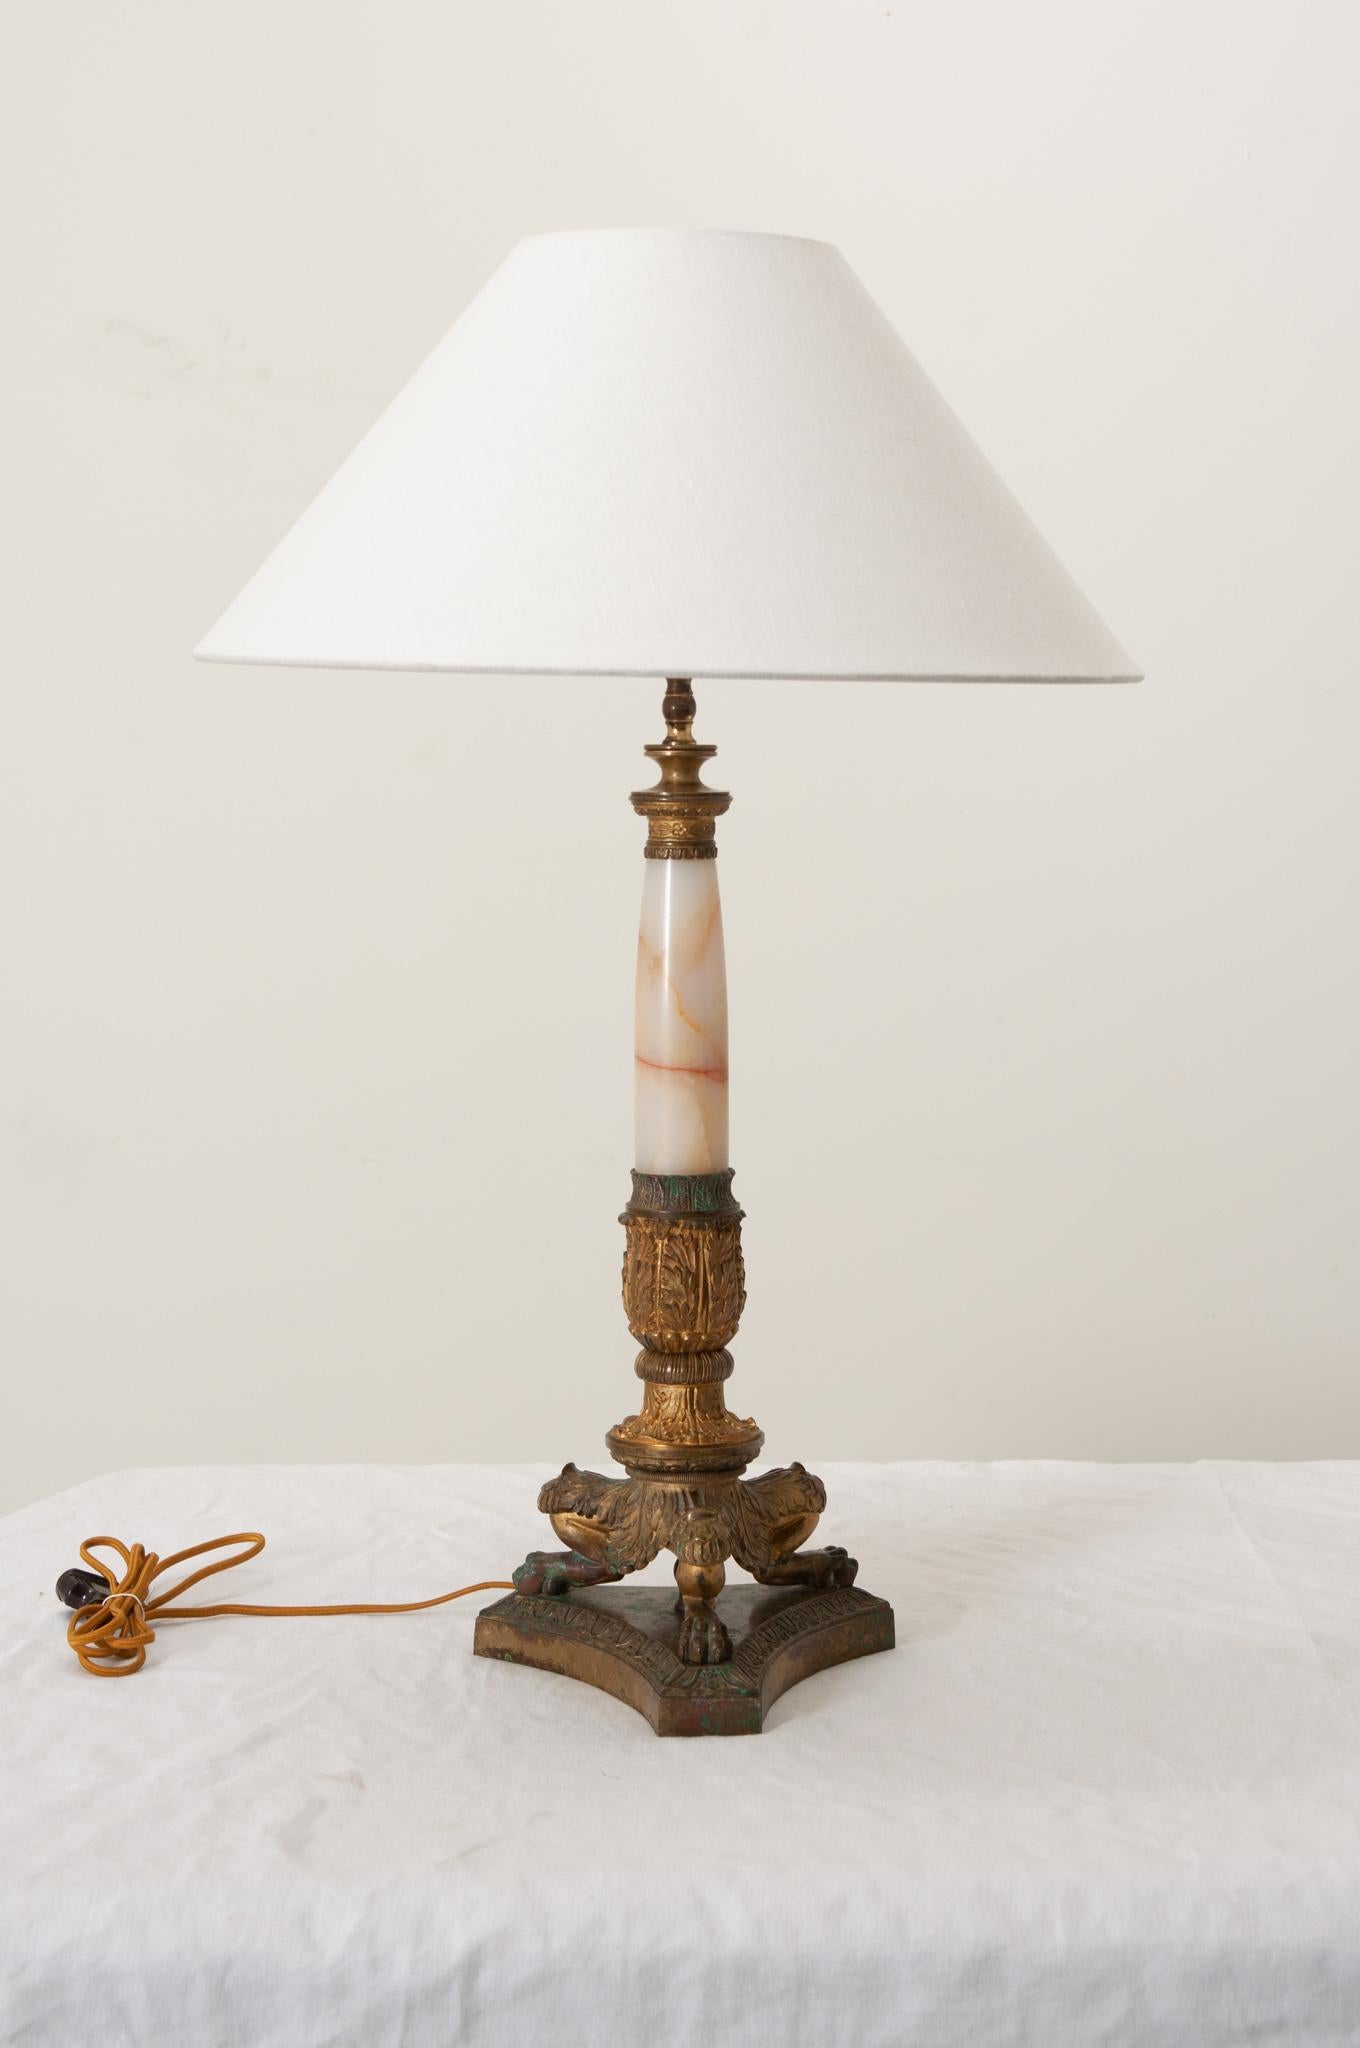 Eine einflammige Tischlampe im französischen Empire-Stil des 19. Jahrhunderts mit zeitgenössischem Leinenschirm. Elegant mit neoklassizistischem Design und einem sich verjüngenden Onyxschaft, der mit dekorativen Messingbeschlägen verziert ist und